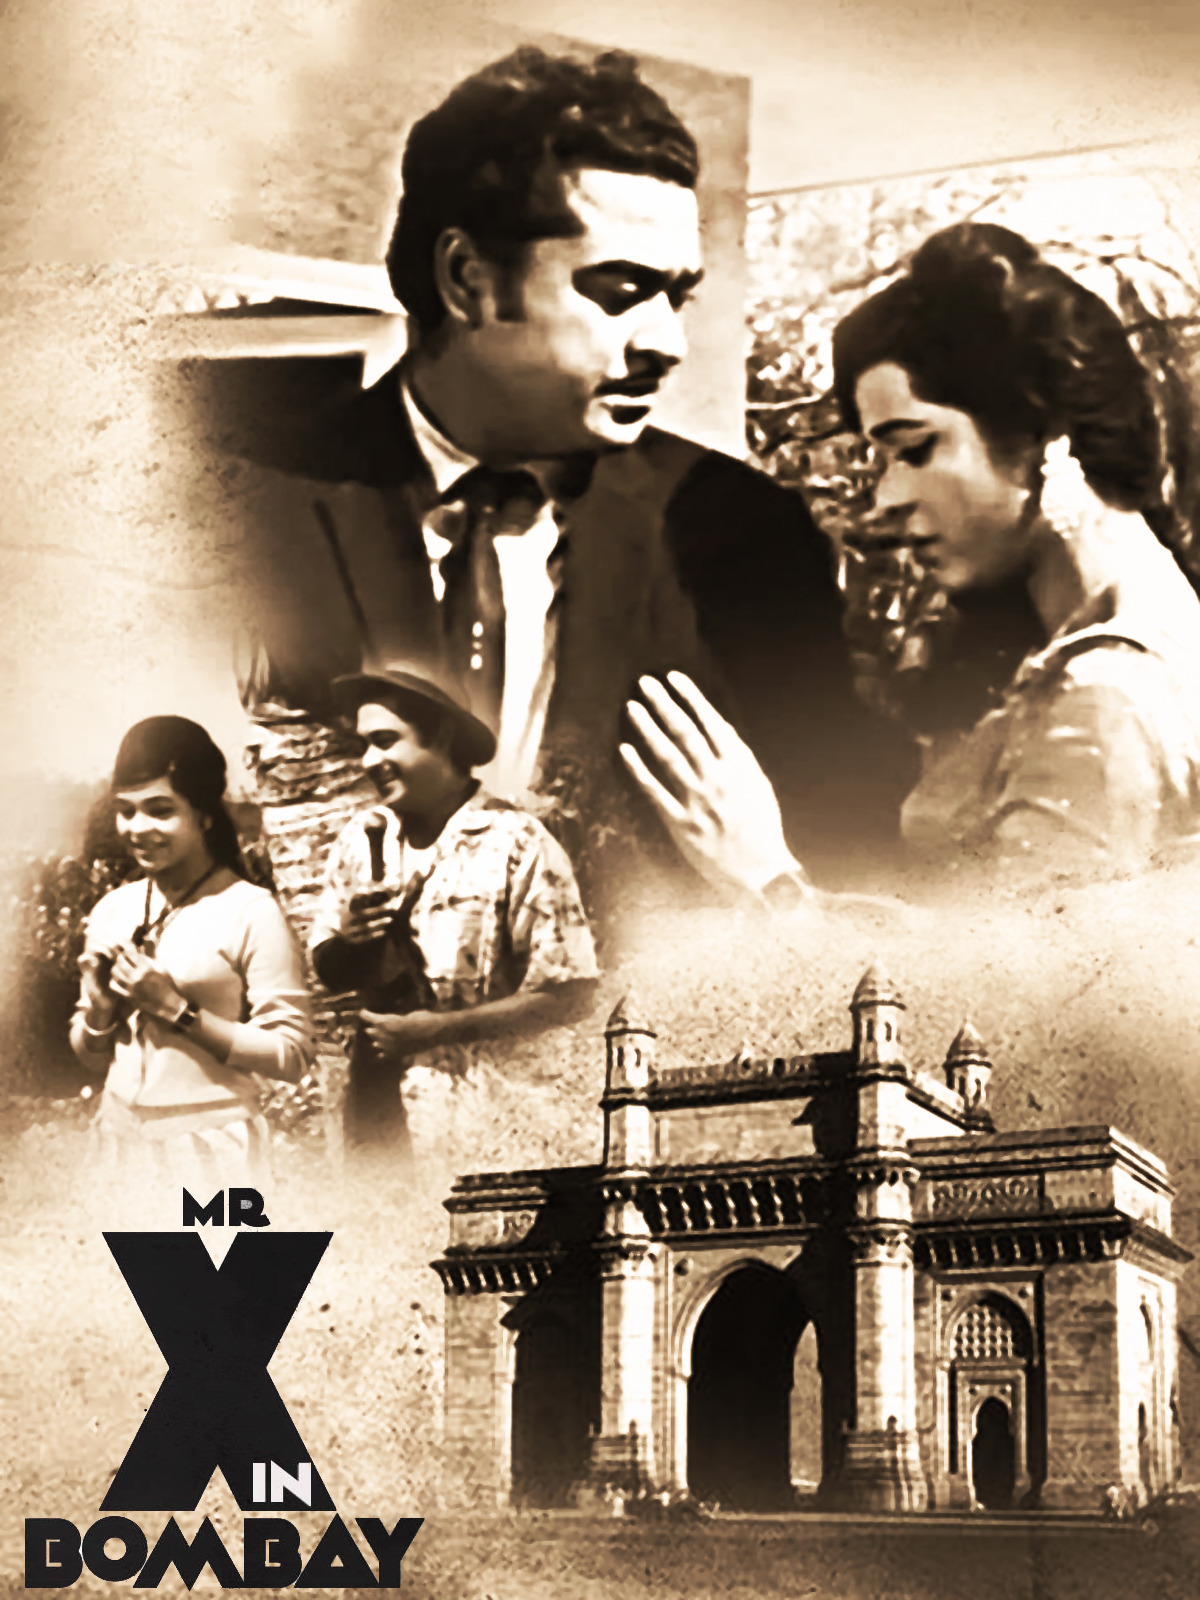 Mr. X in Bombay Poster